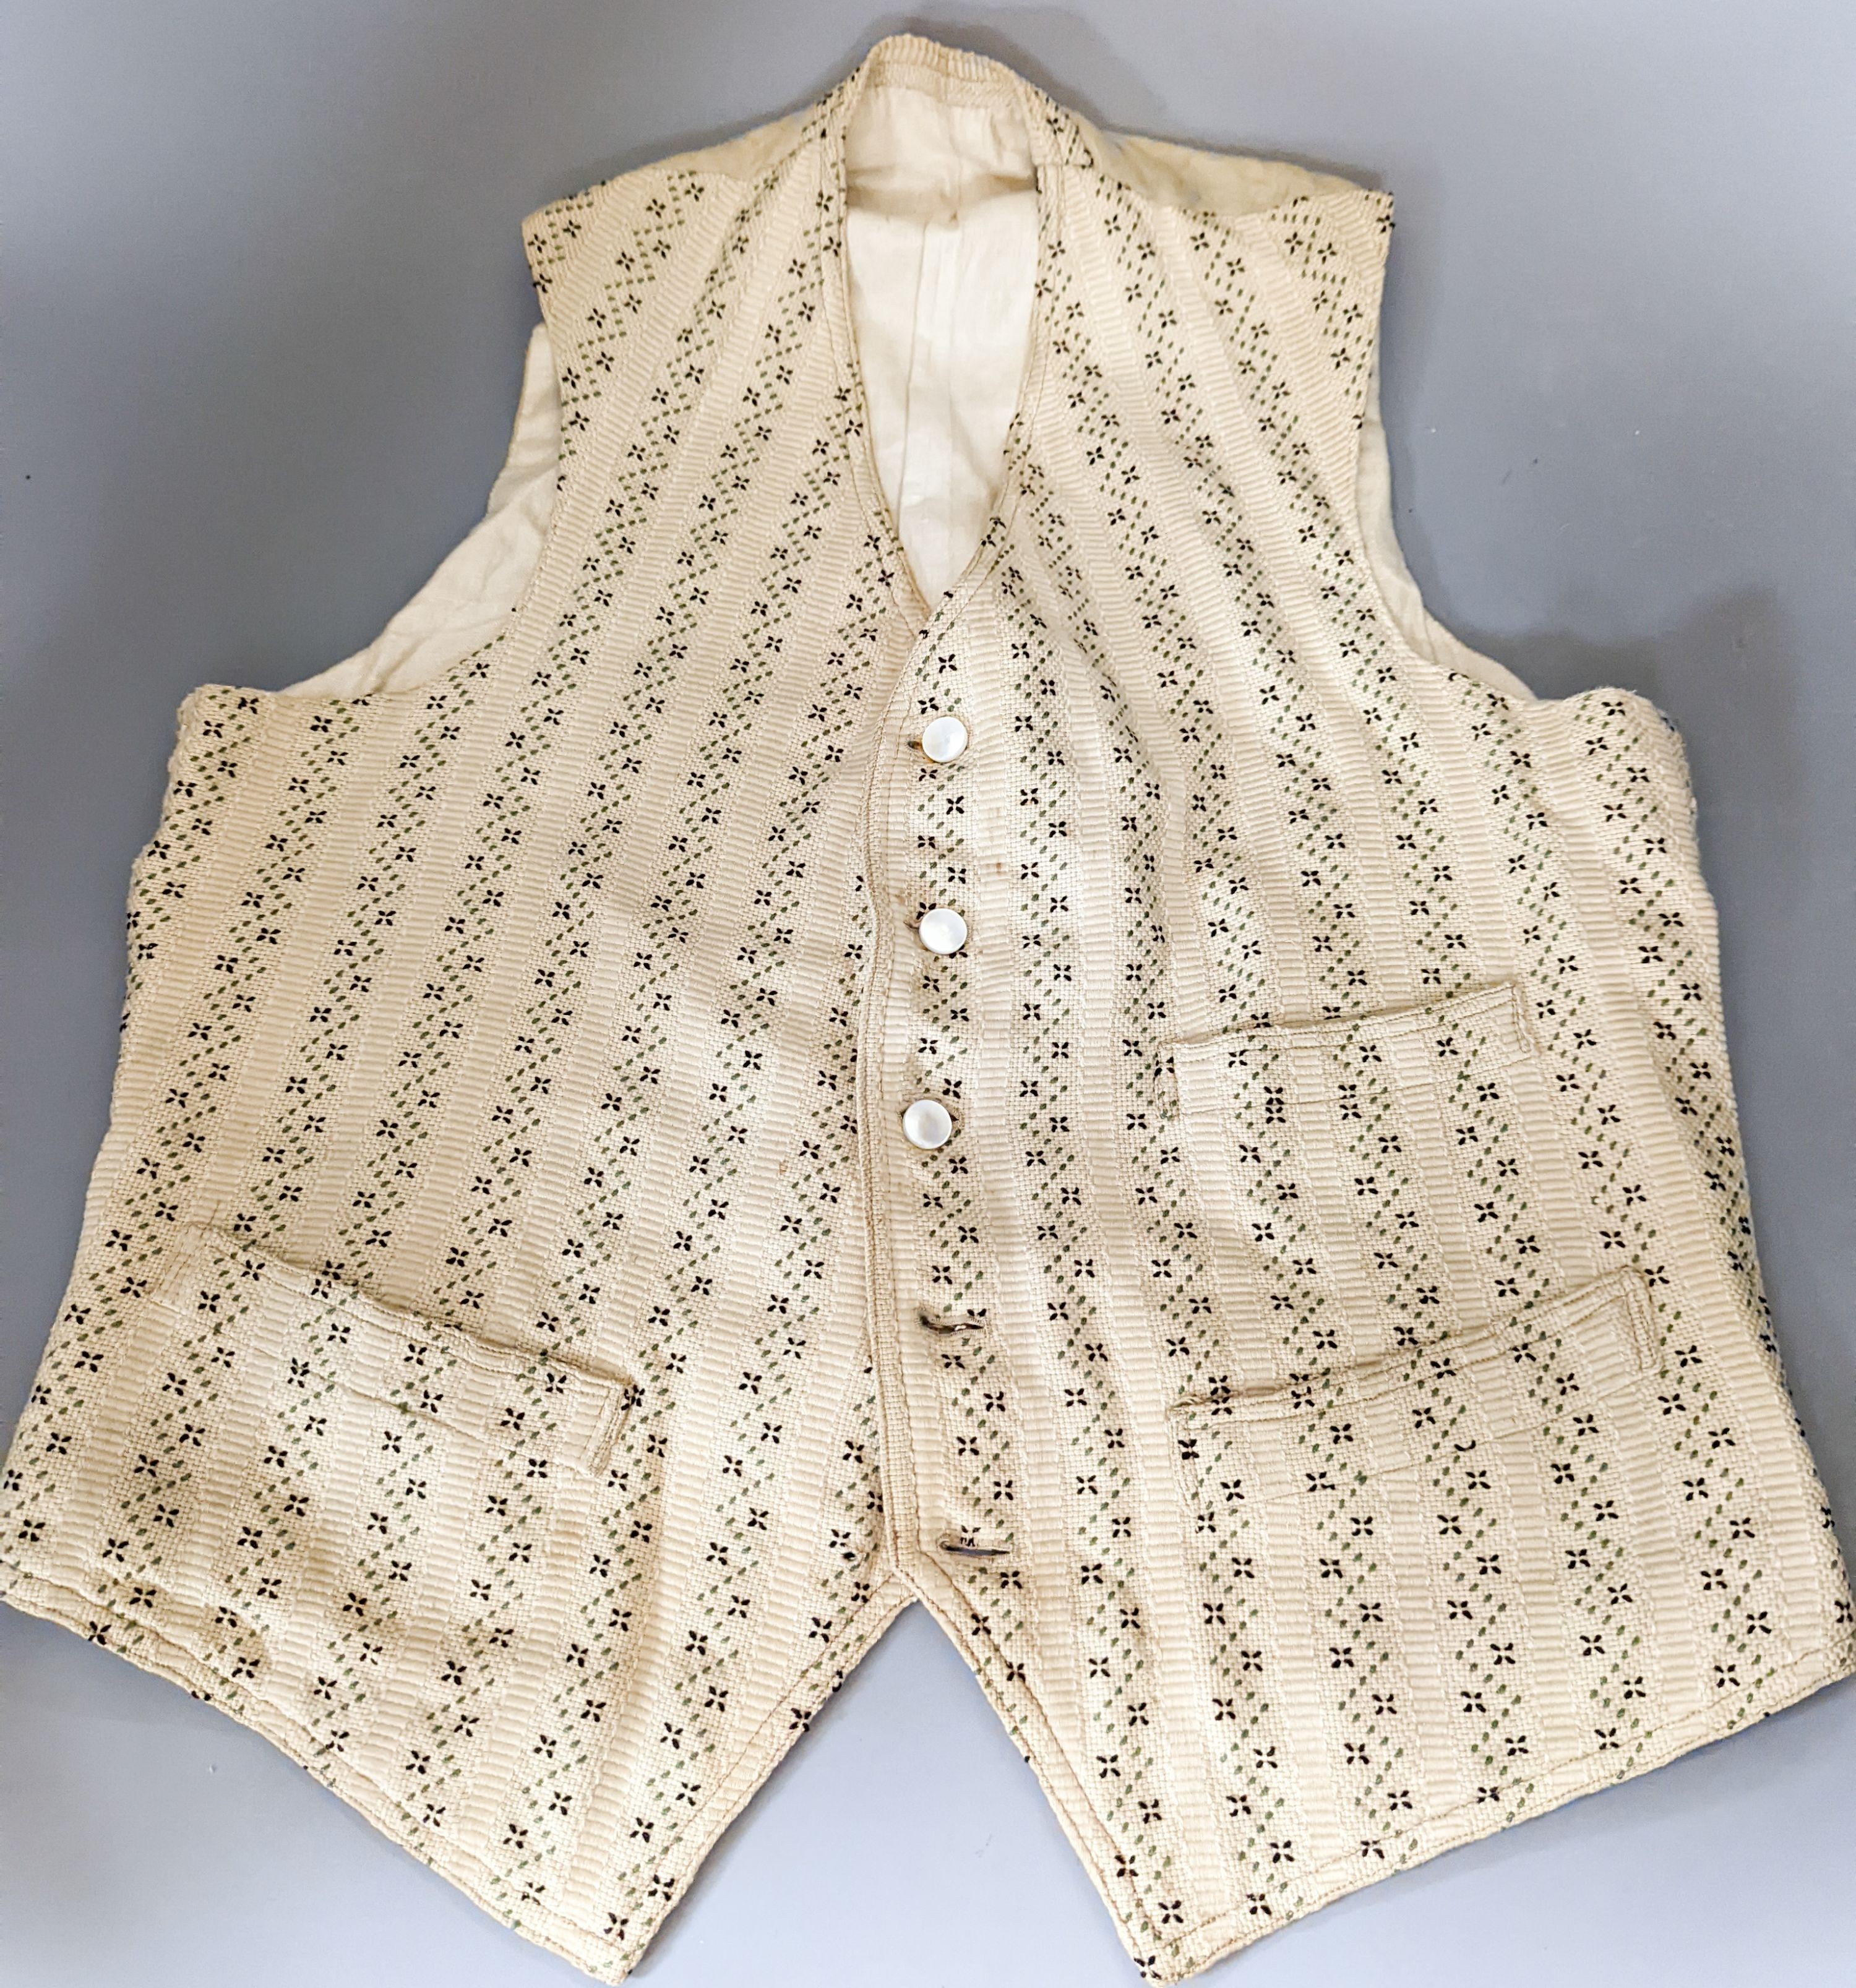 A 19th century gents waistcoat